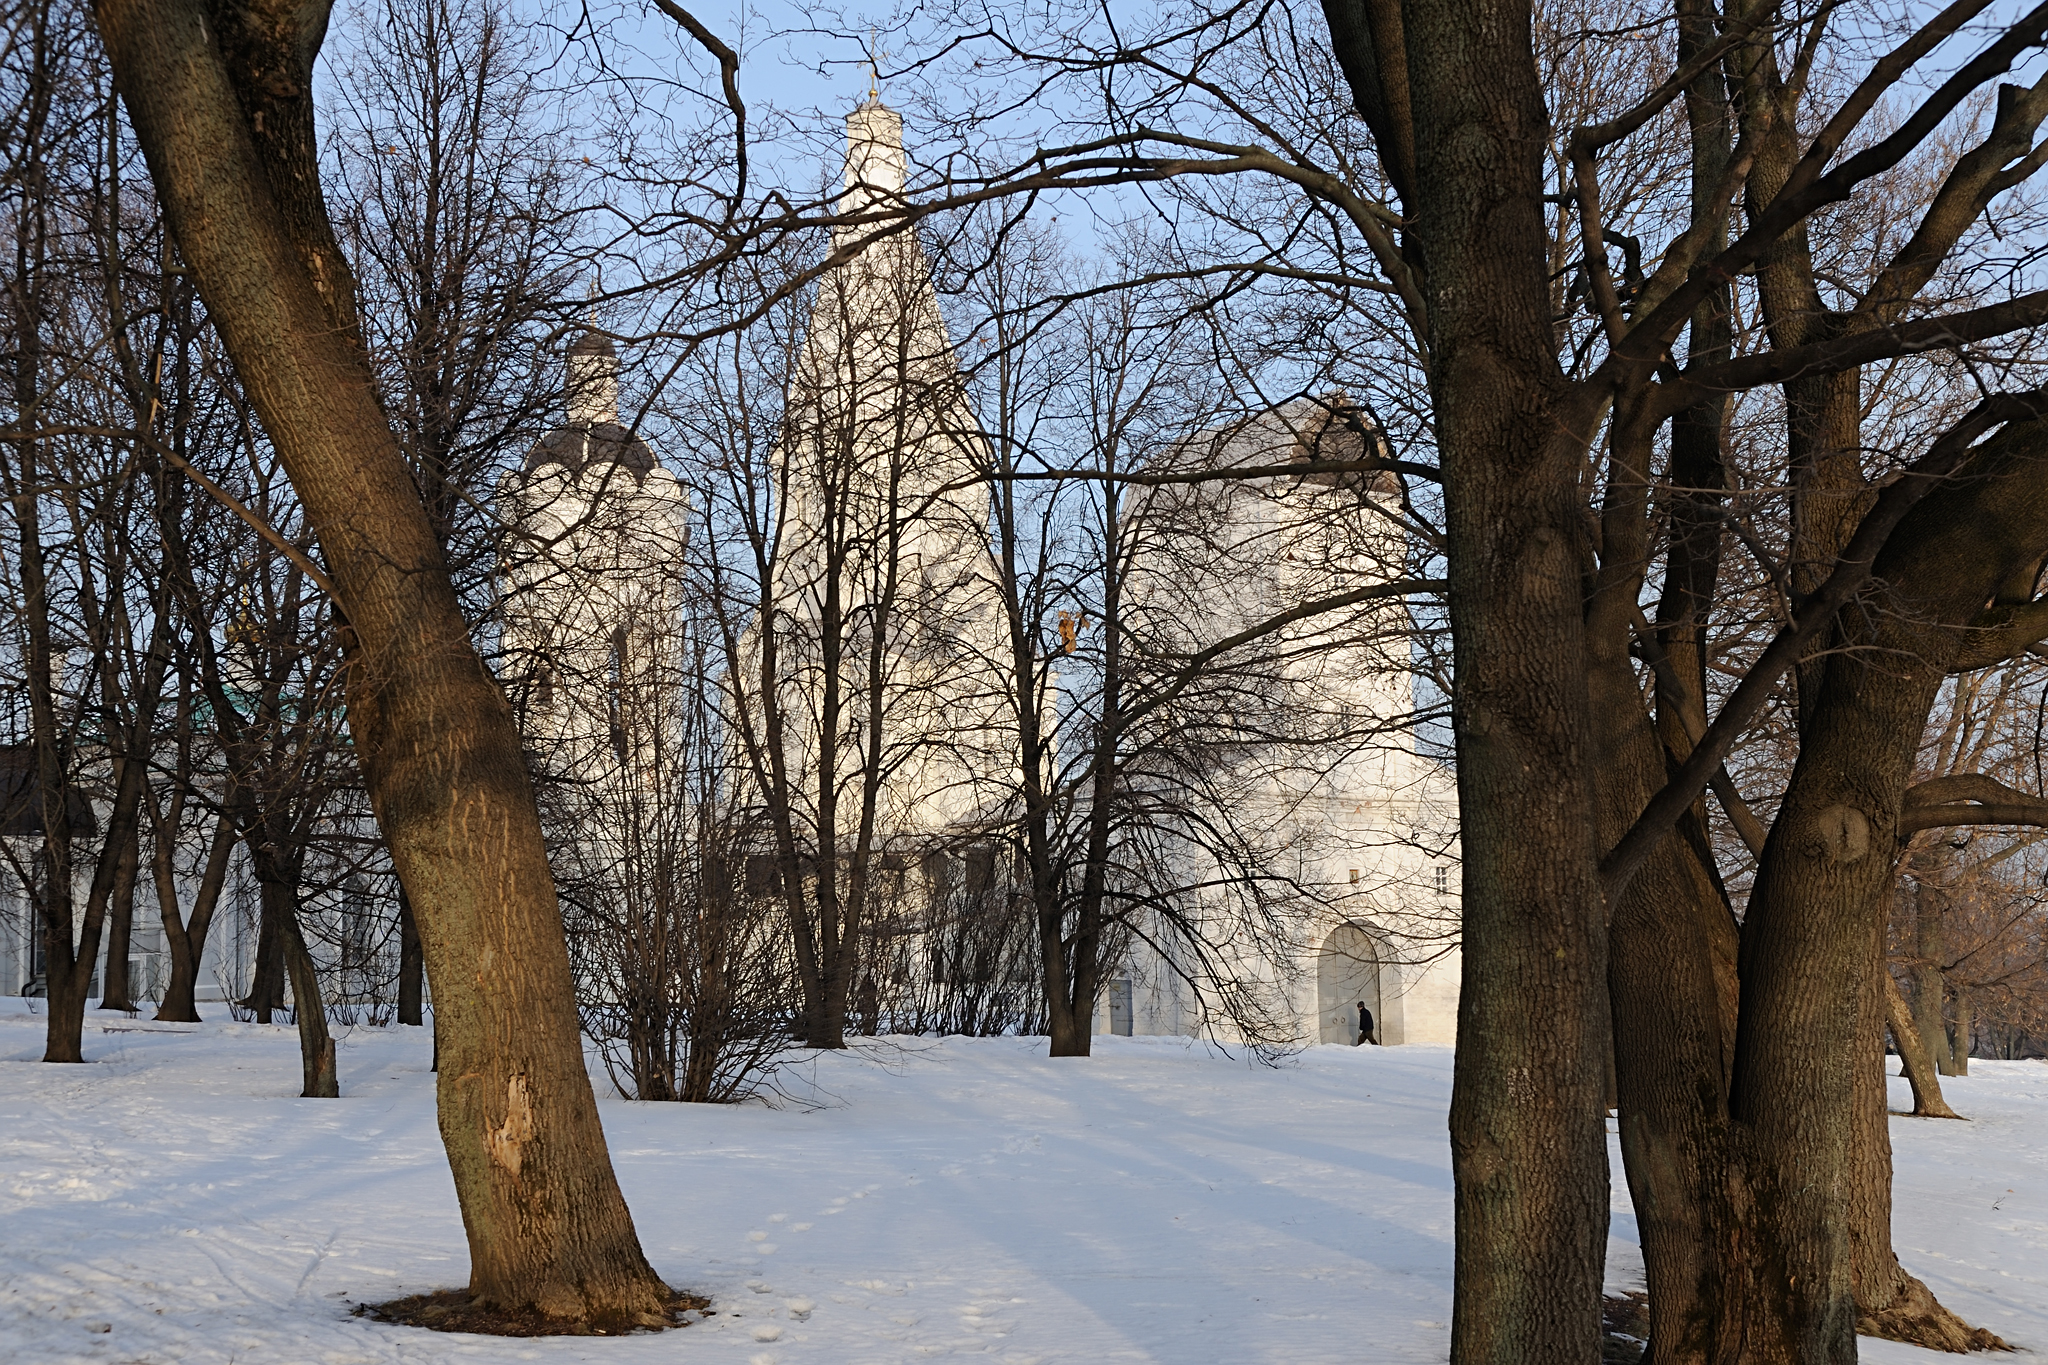 Сегодня в коломенском парке. Усадьба Коломенское зимой. Парк Коломенское зимой. Коломенский парк зима. Коломенский парк зимой.